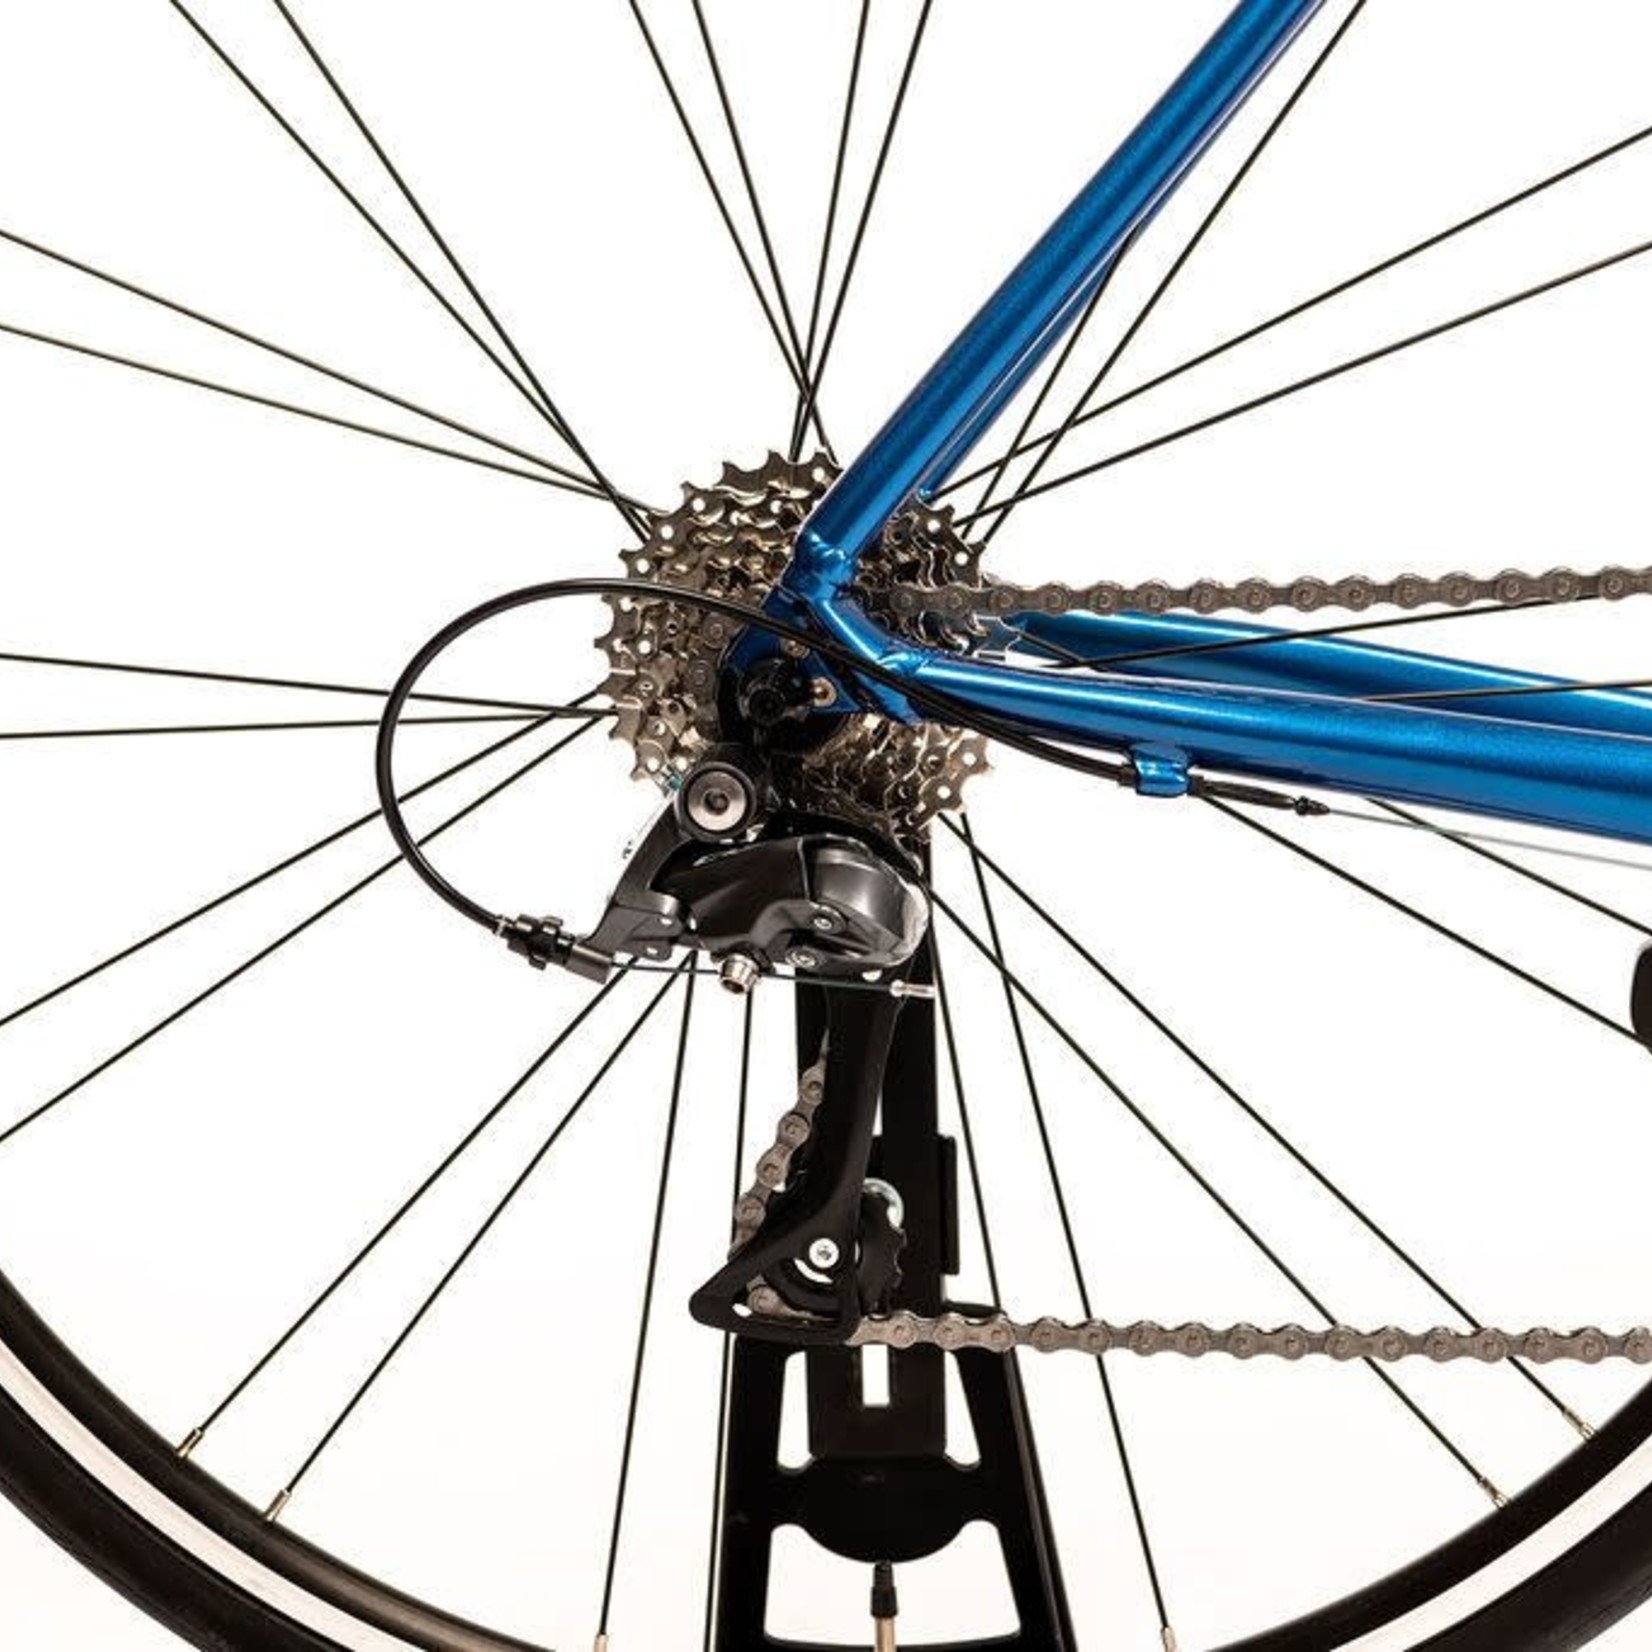 MERIDA MERIDA SCULTURA RIM 100 Road Bike - Blue/White ( 2021)